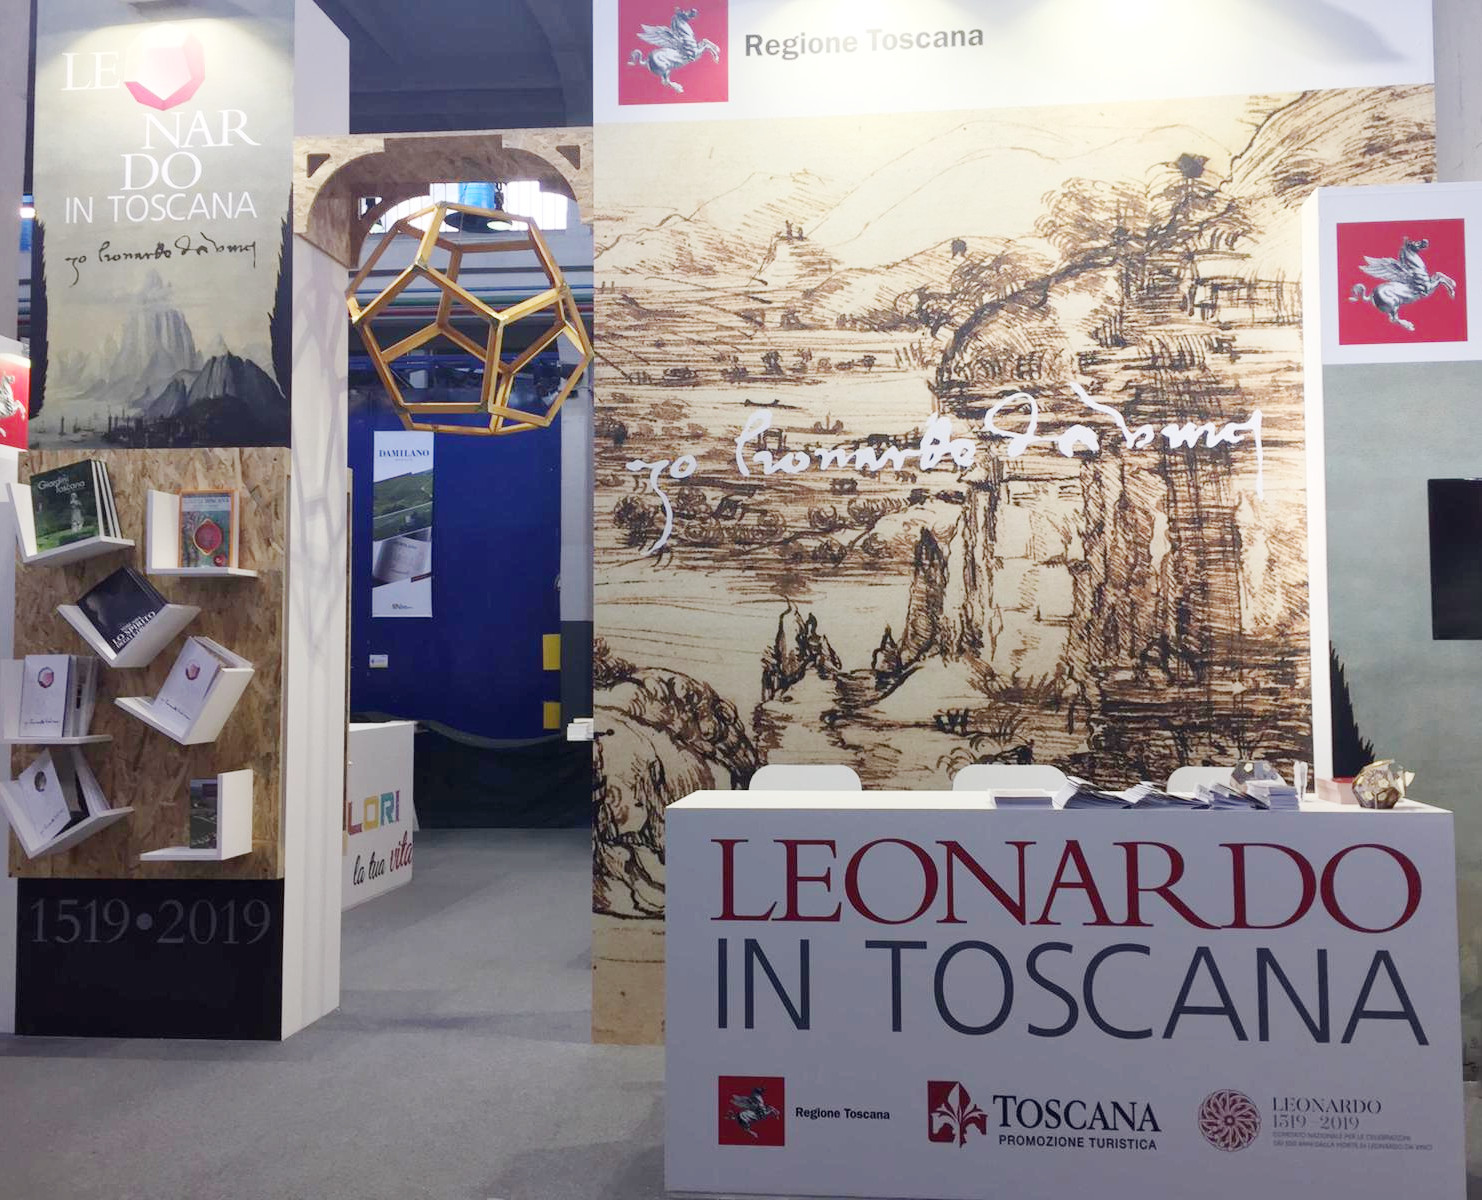 Immagine Salone del libro, la Toscana presente con un suo stand: patto per la lettura e Leonardo da Vinci